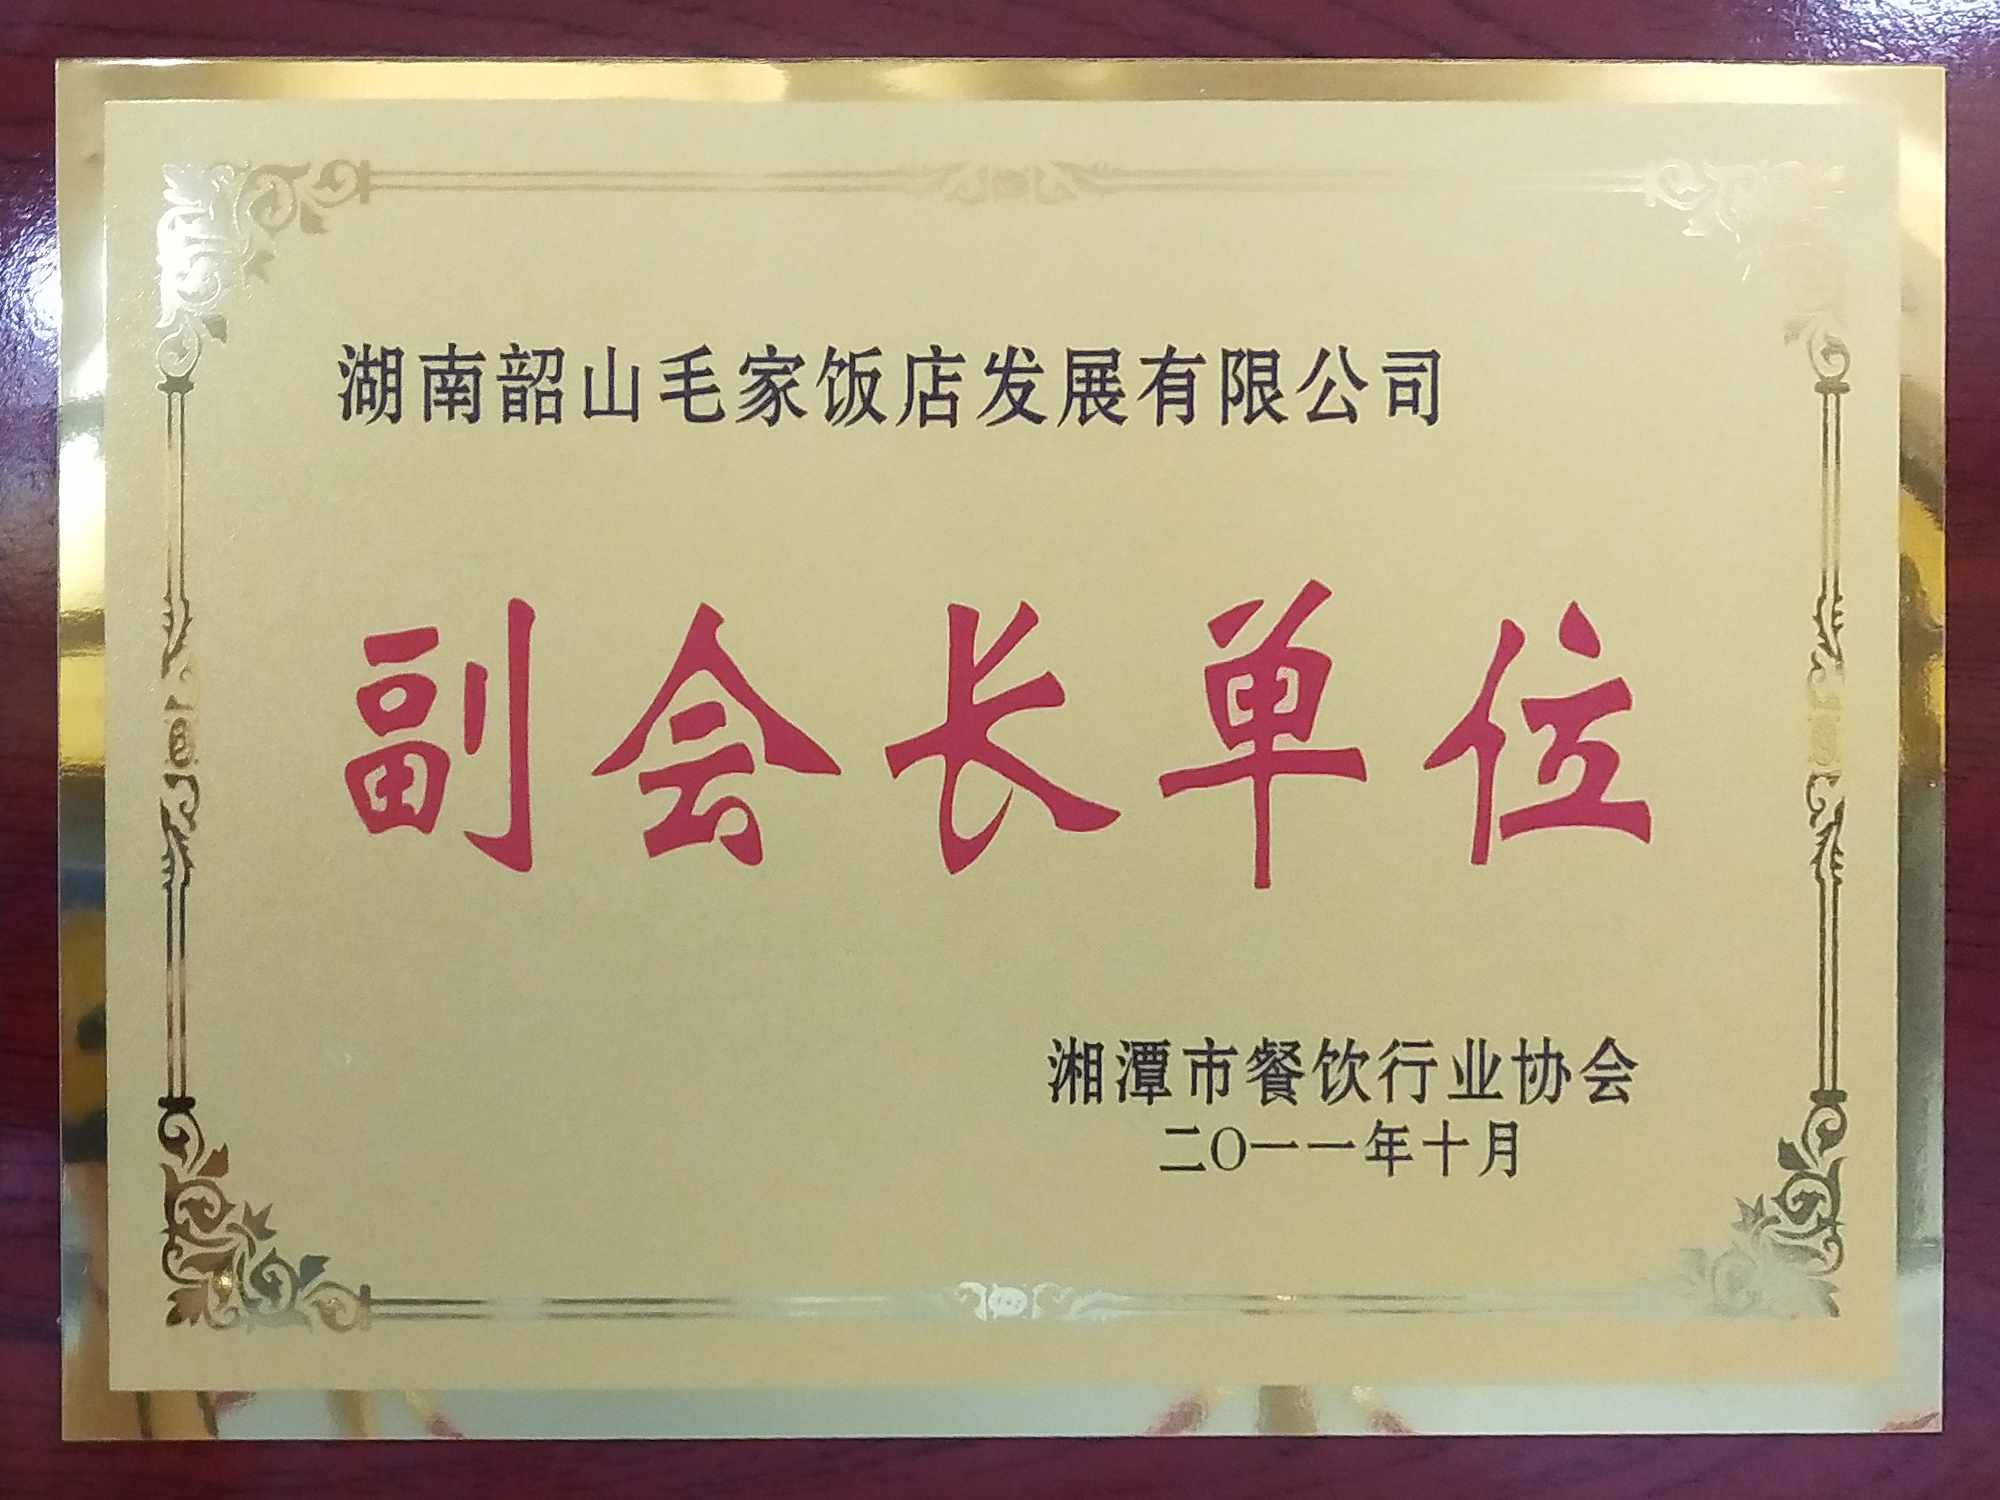 湘潭市餐饮行业协会副会长单位